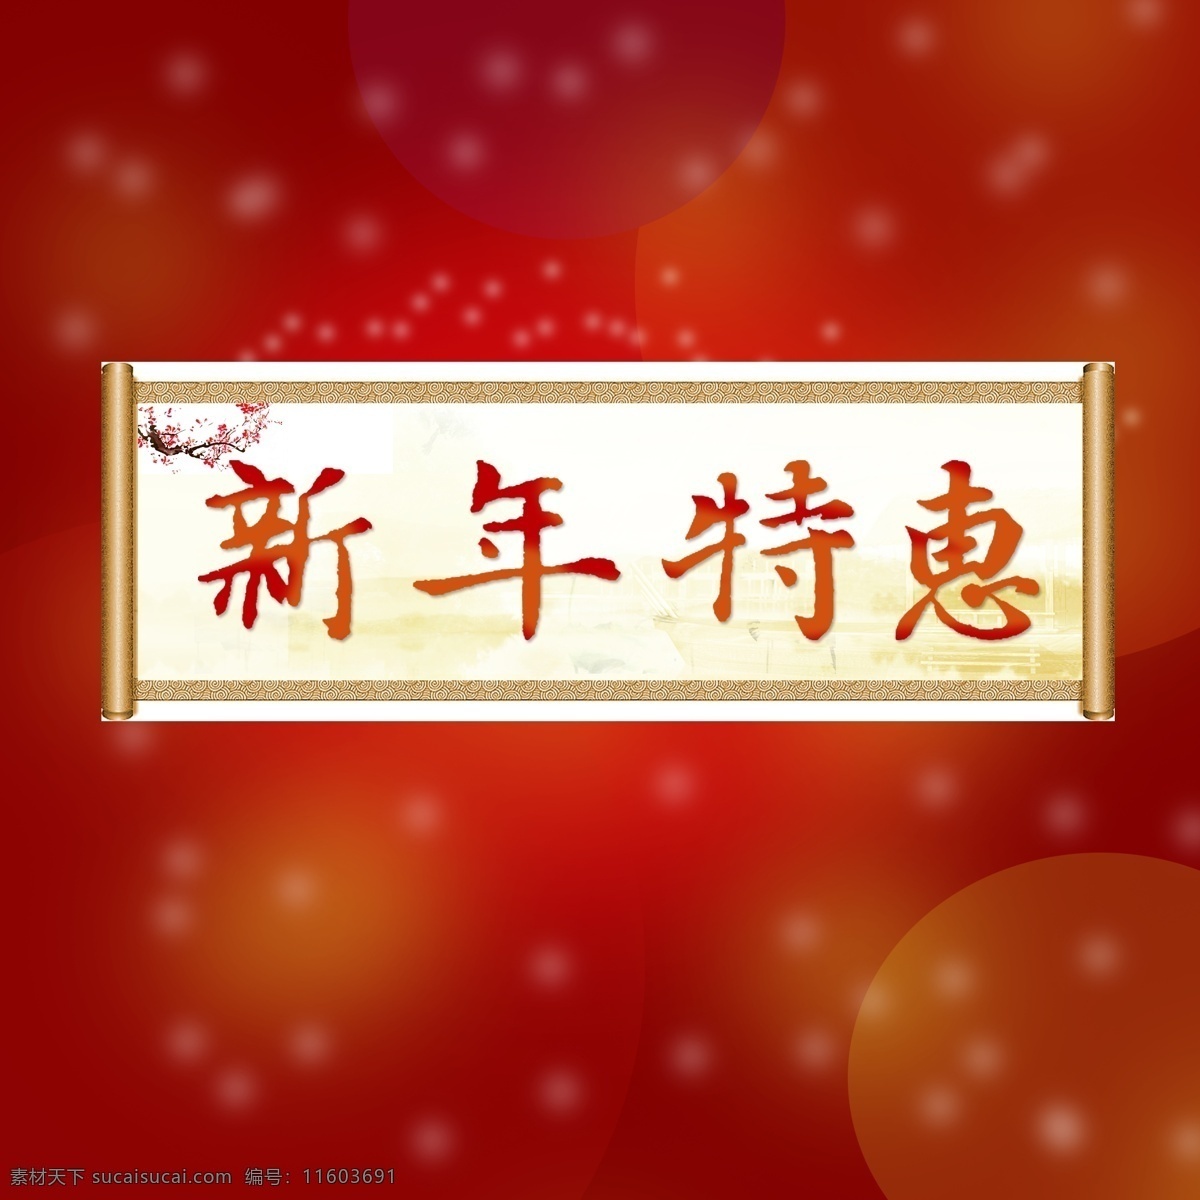 新年 特惠 节日 过年 年货 元宵节 红色 圆点 海报 新年特惠 画轴 淘宝 梦幻 喜庆